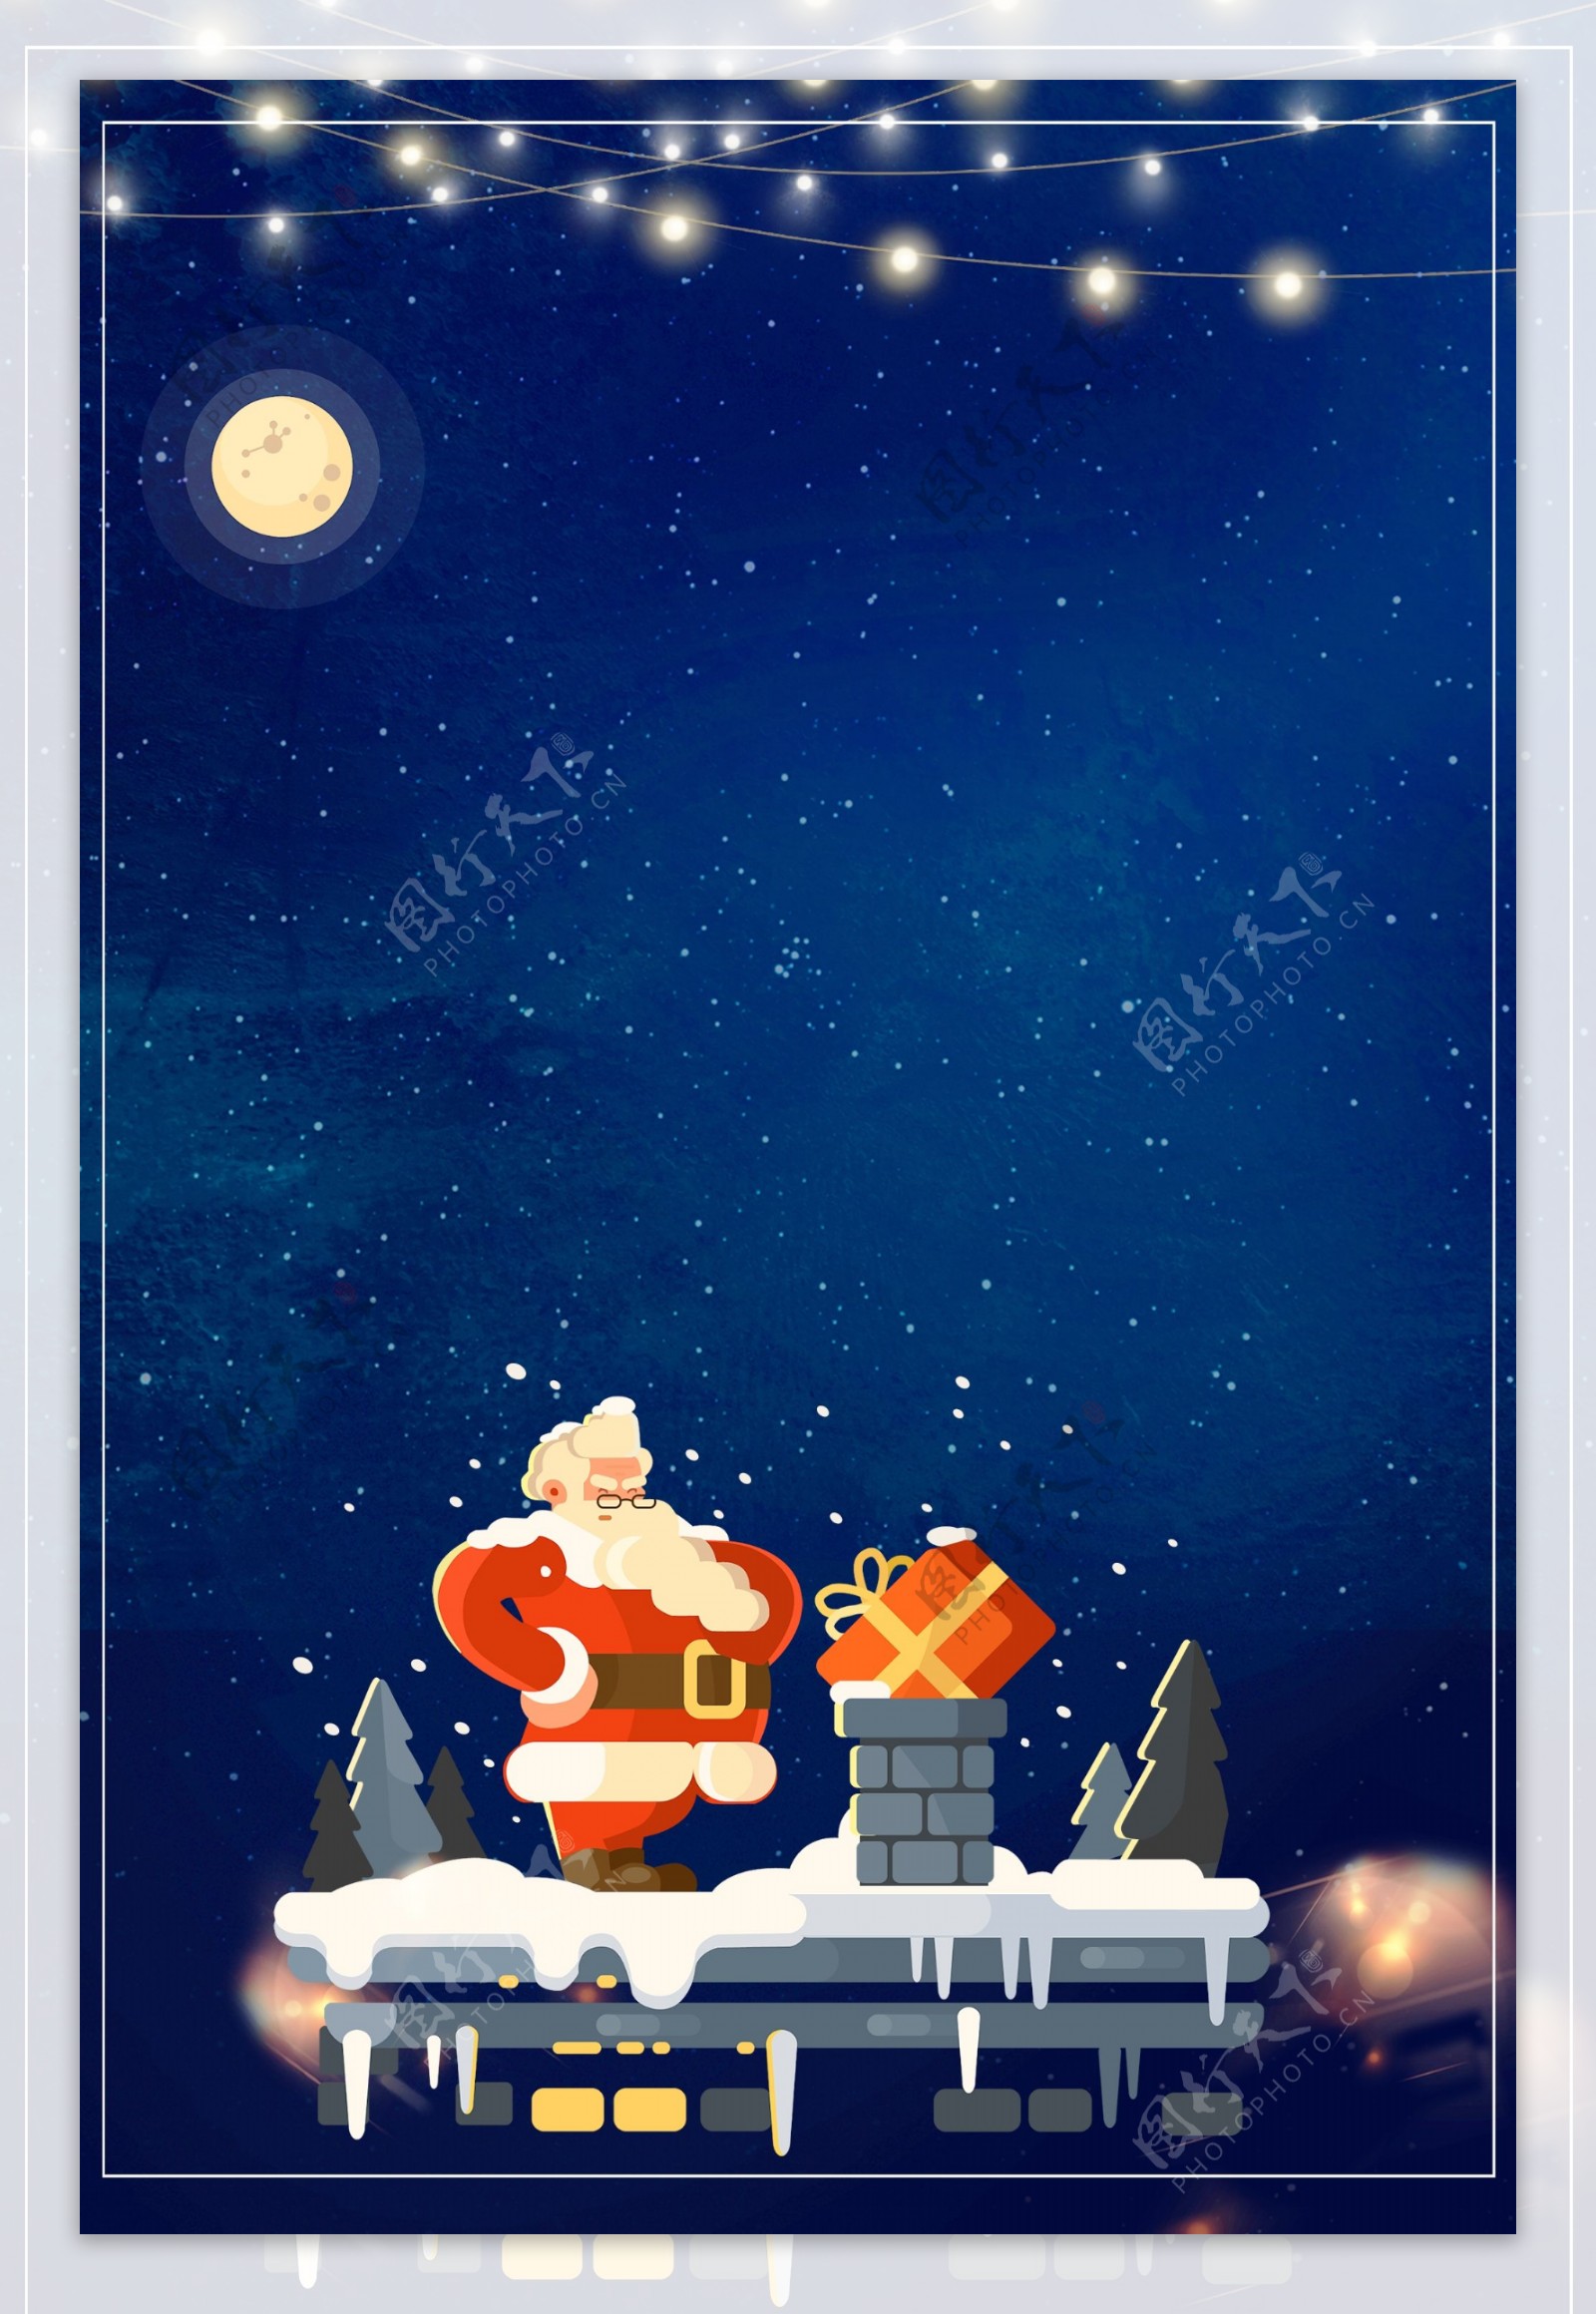 雪地平安夜圣诞节卡通手绘广告背景图